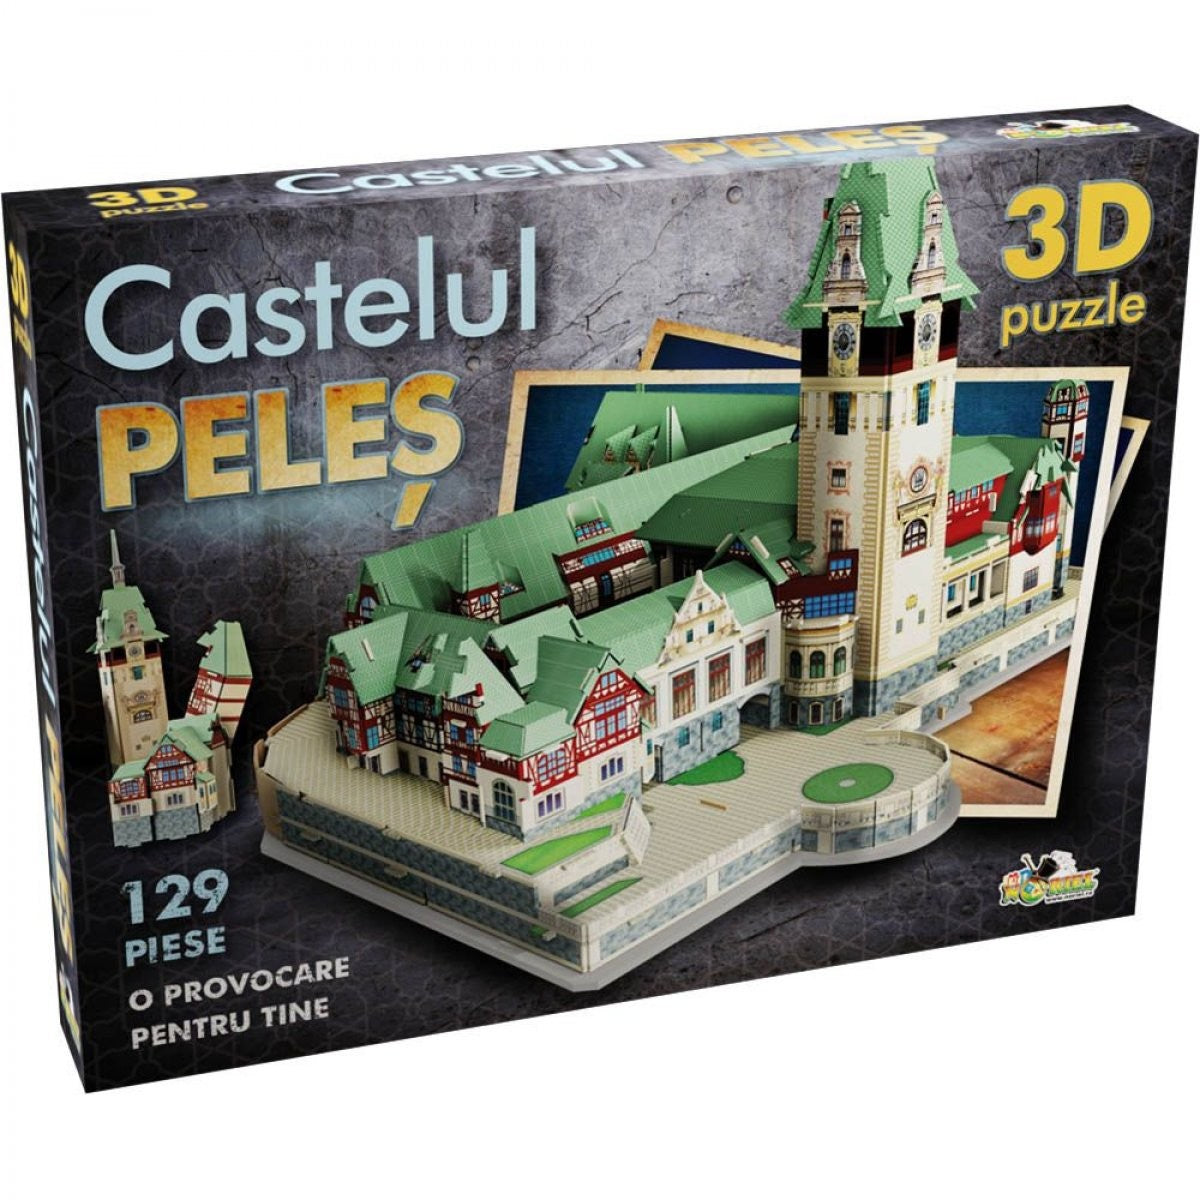 Puzzle 3D Noriel-Castelul Peles,129piese